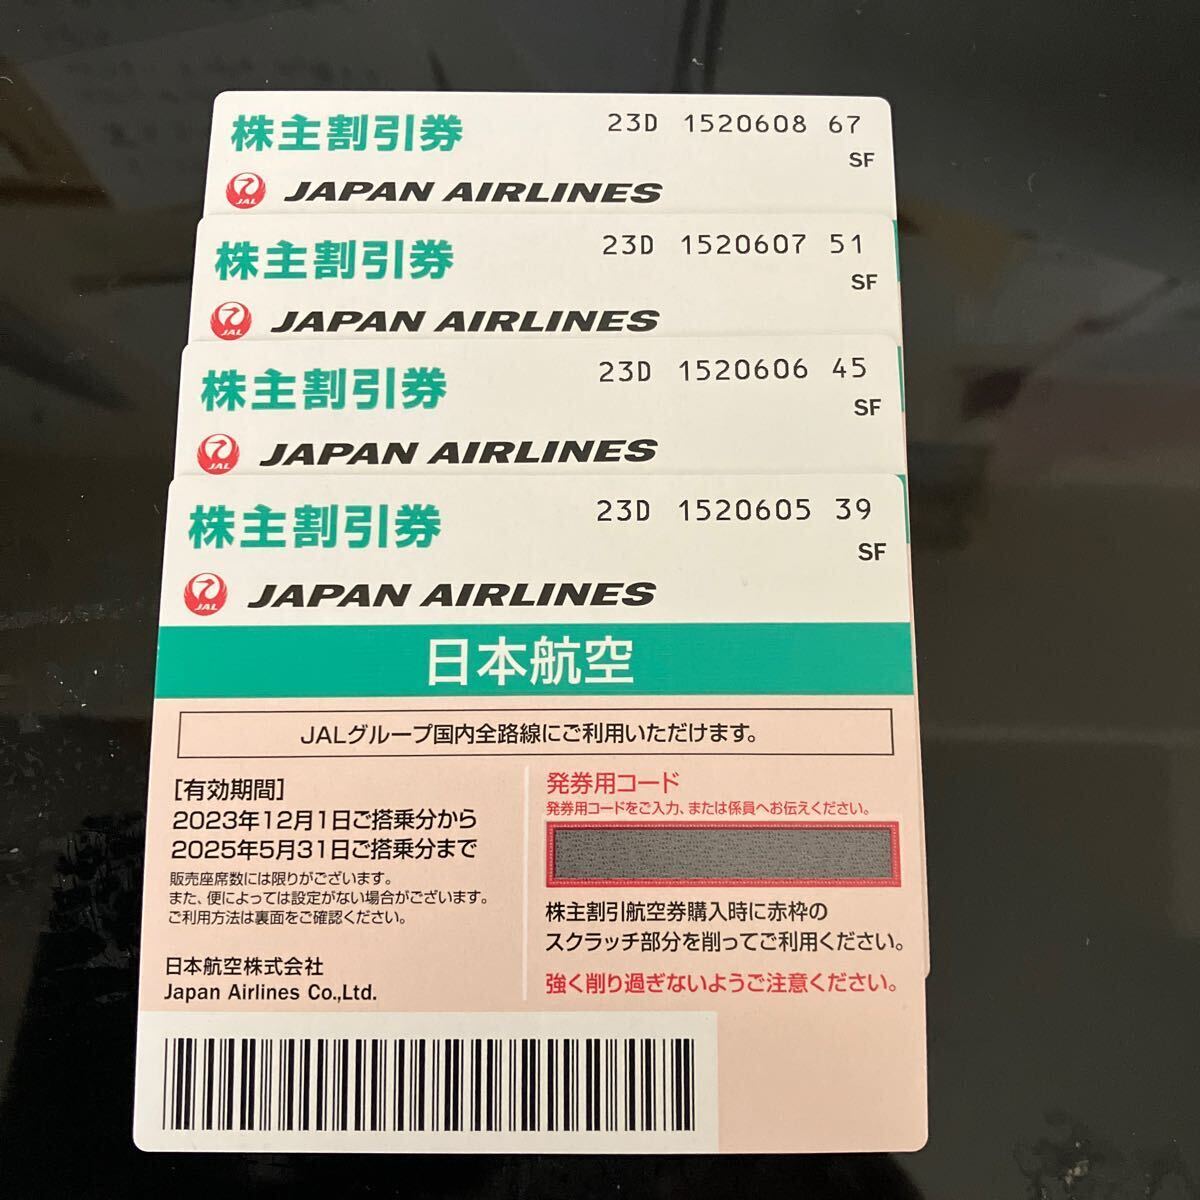 JAL акционер пригласительный билет 4 листов временные ограничения 2025 год 5 месяц 31 день 